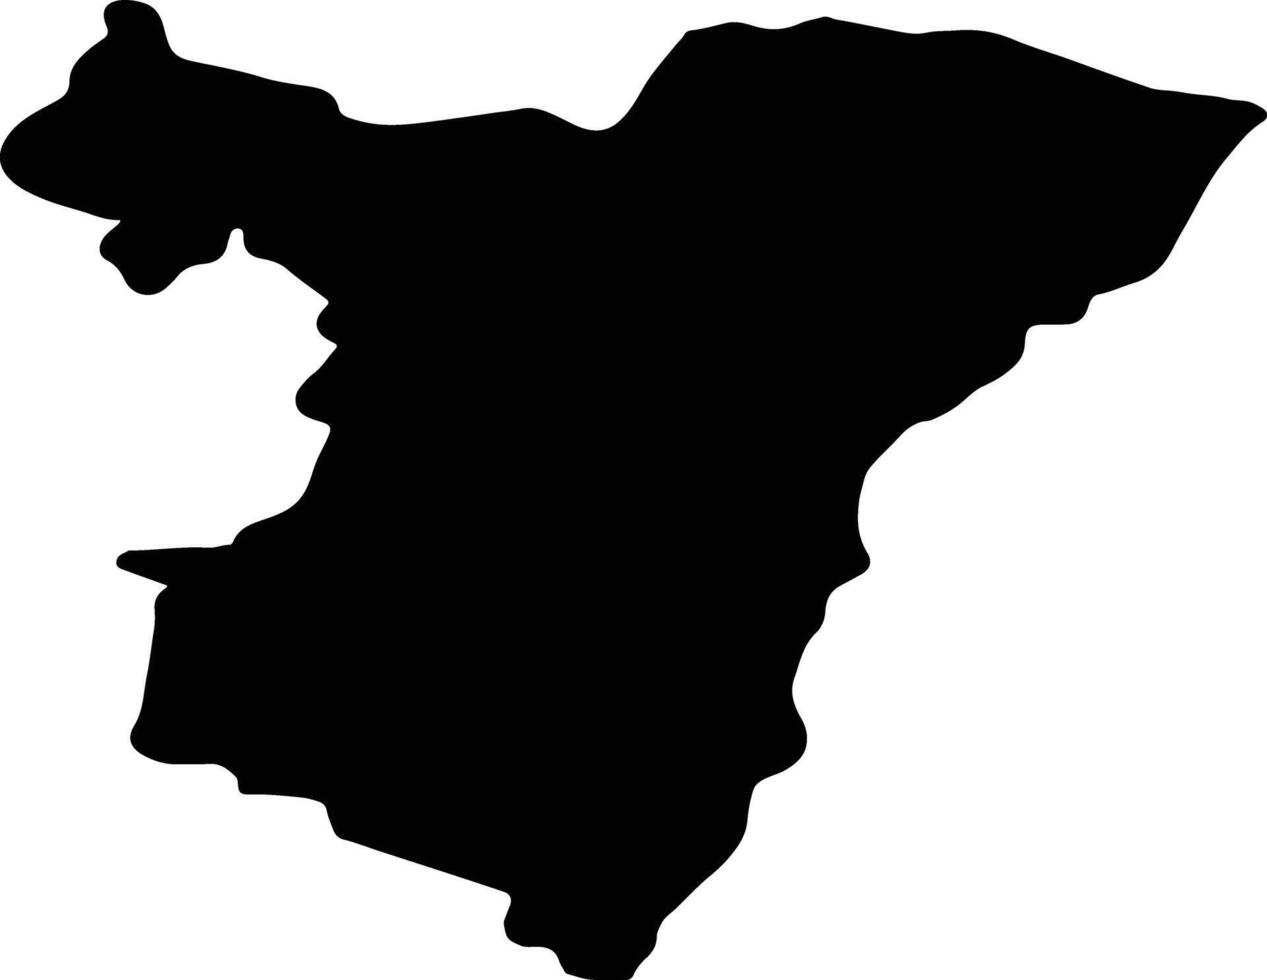 bas rin Francia silhouette carta geografica vettore